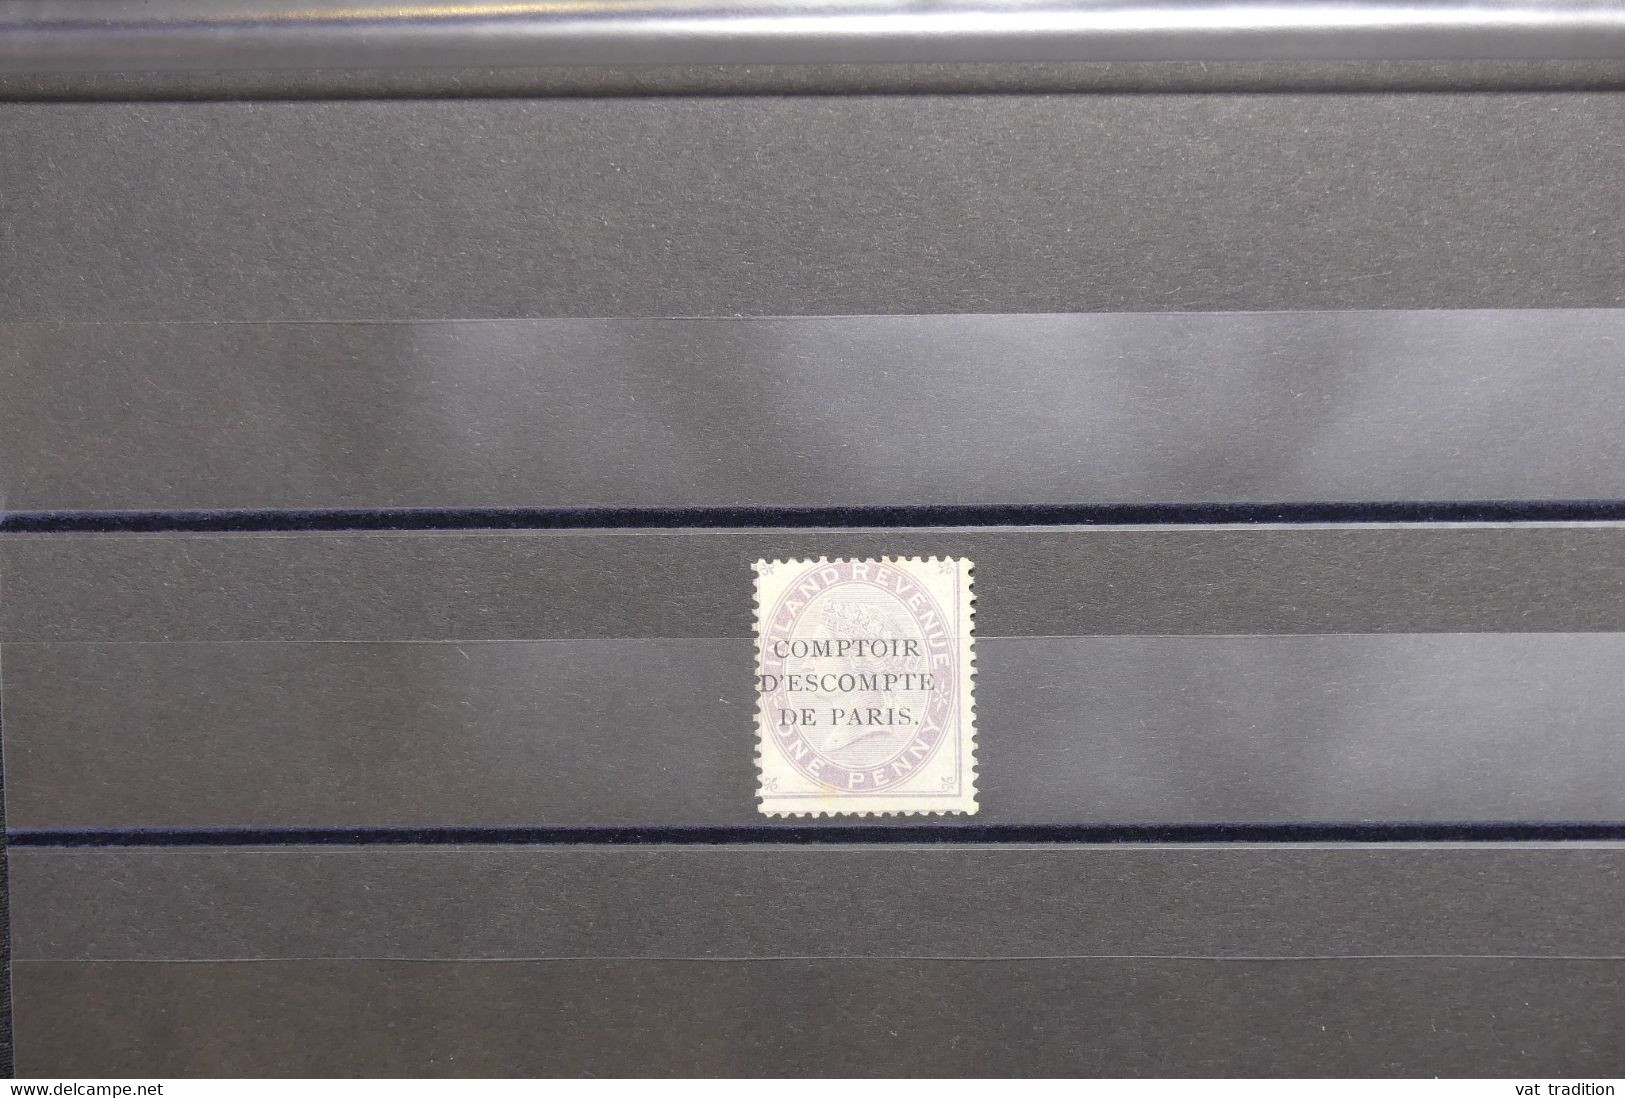 ROYAUME UNI - Fiscaux - Type Victoria 1 P. Avec Surcharge Comptoir D'Escompte De Paris  - L 127969 - Revenue Stamps